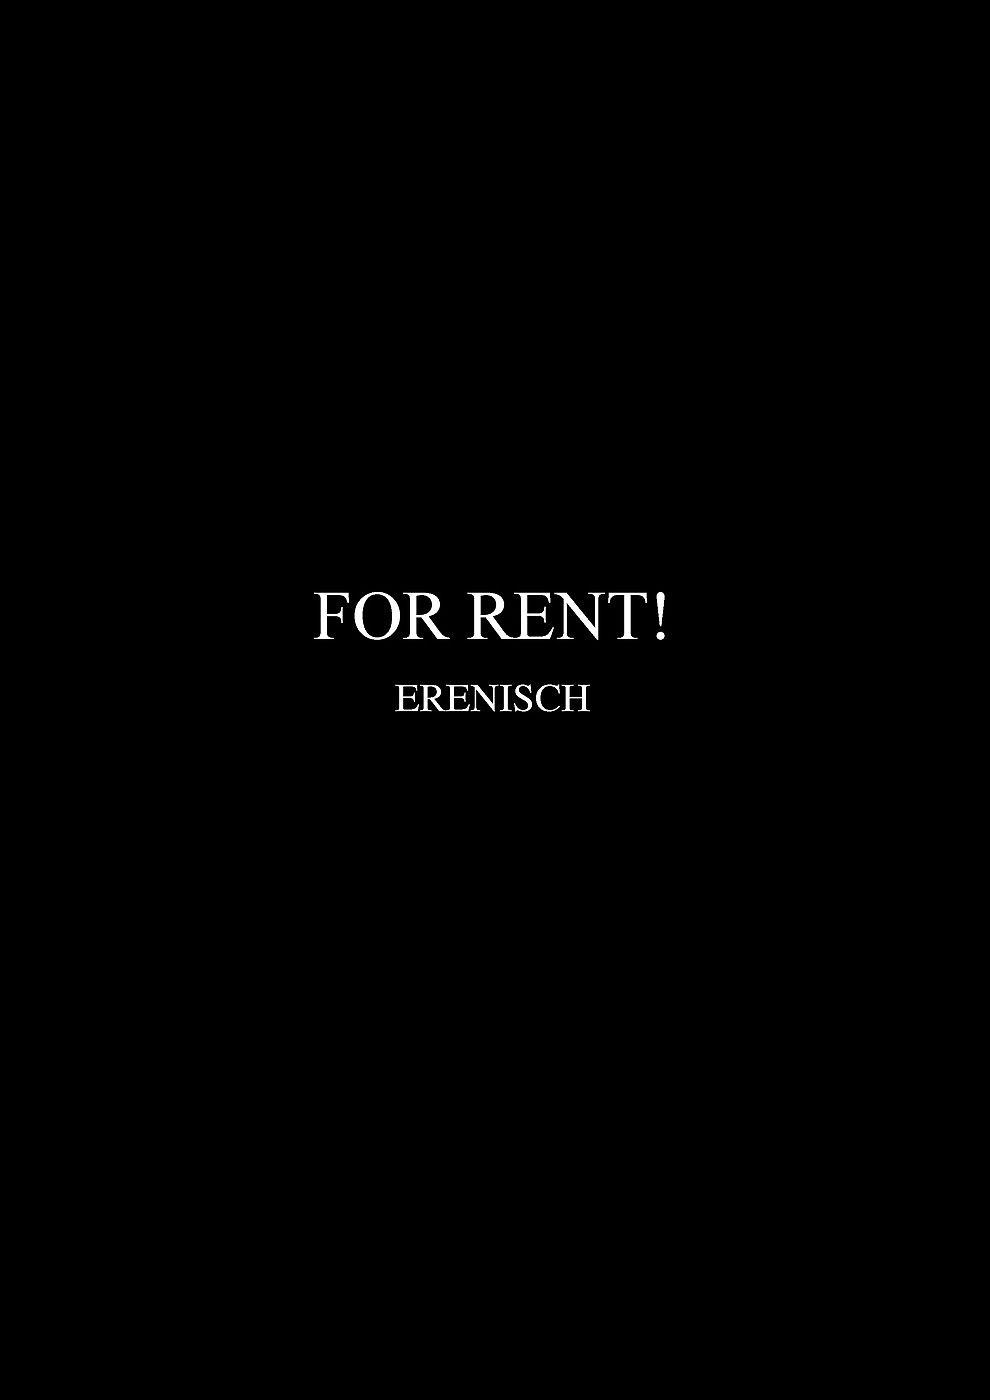 Erenisch для аренда page 1